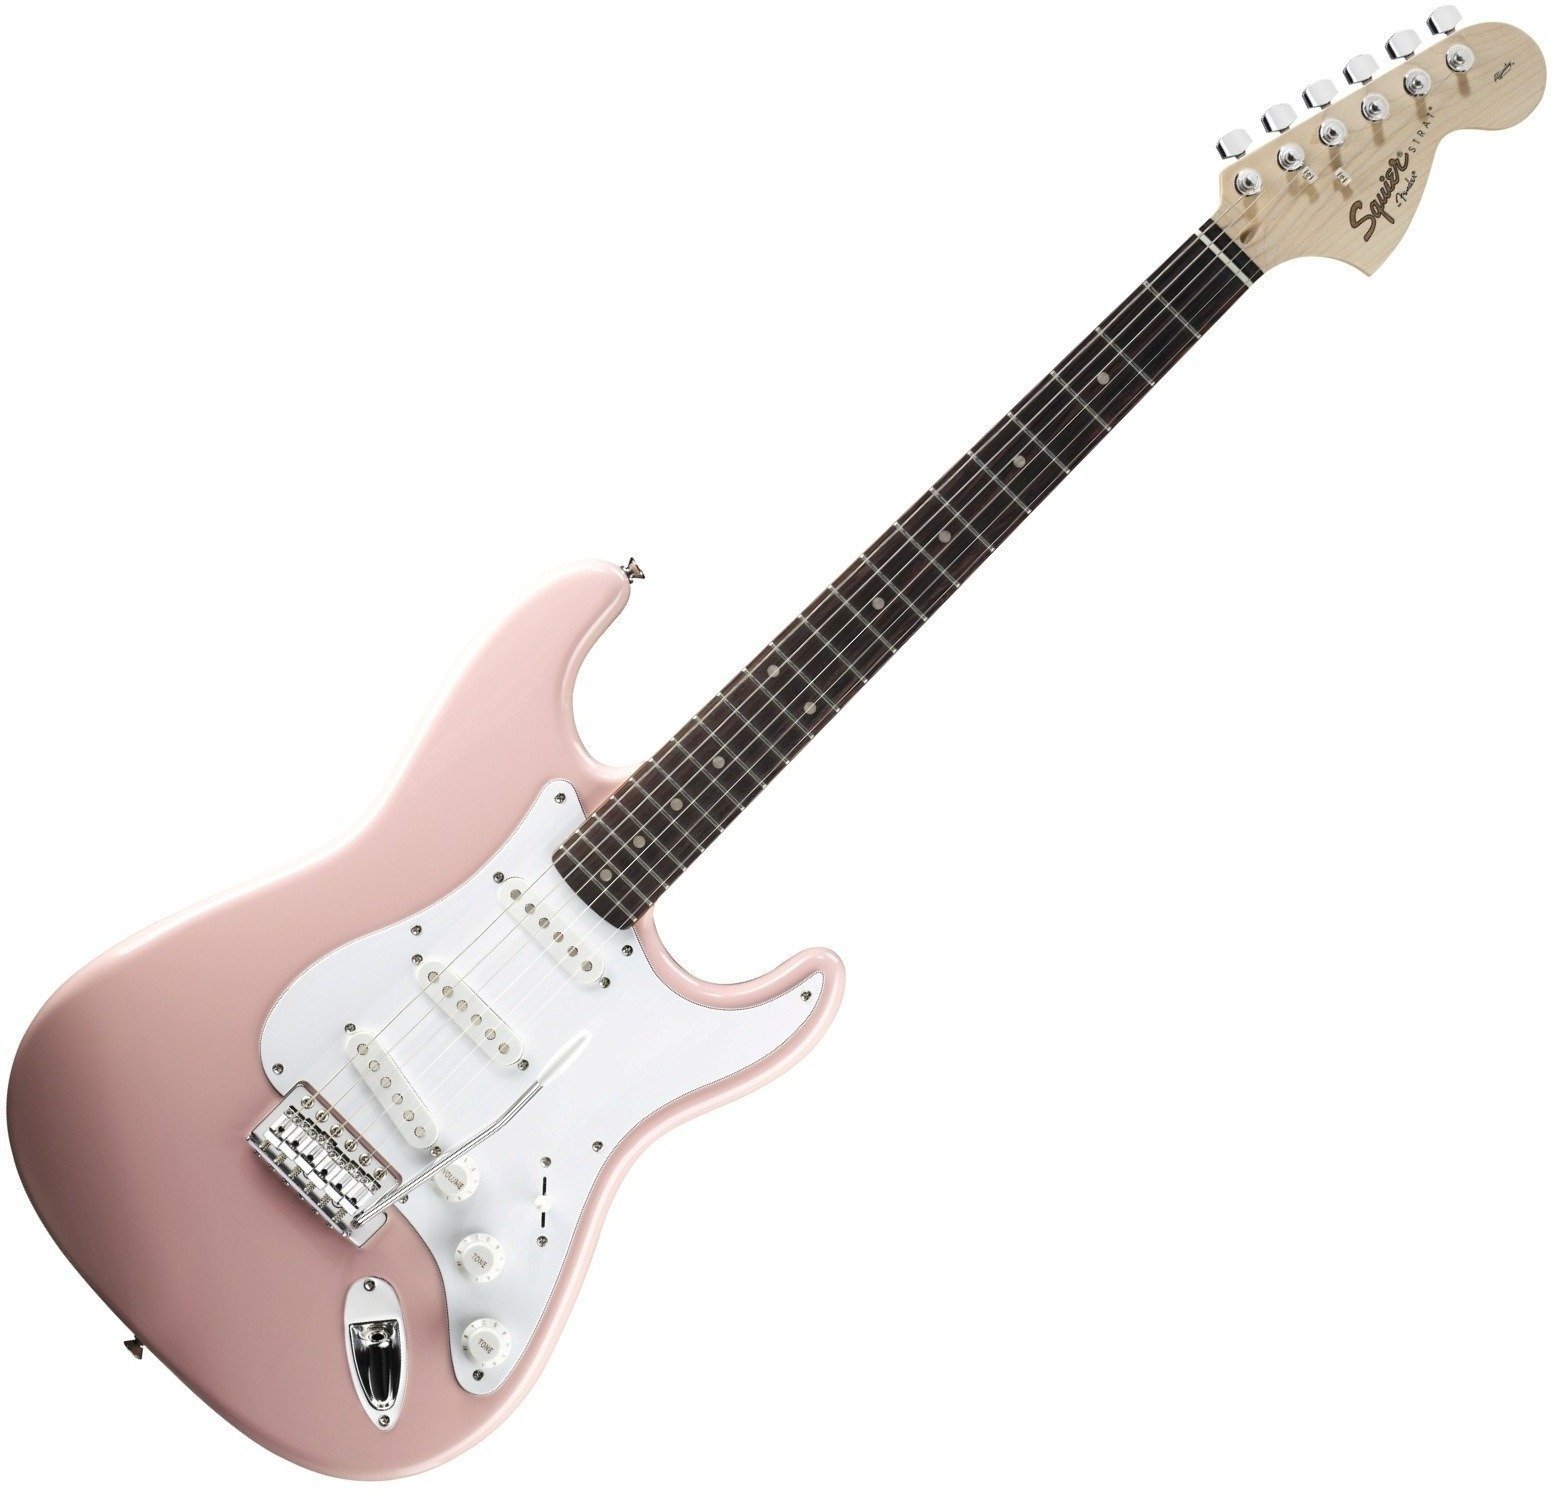 Sähkökitara Fender Squier Affinity Stratocaster Shell pink